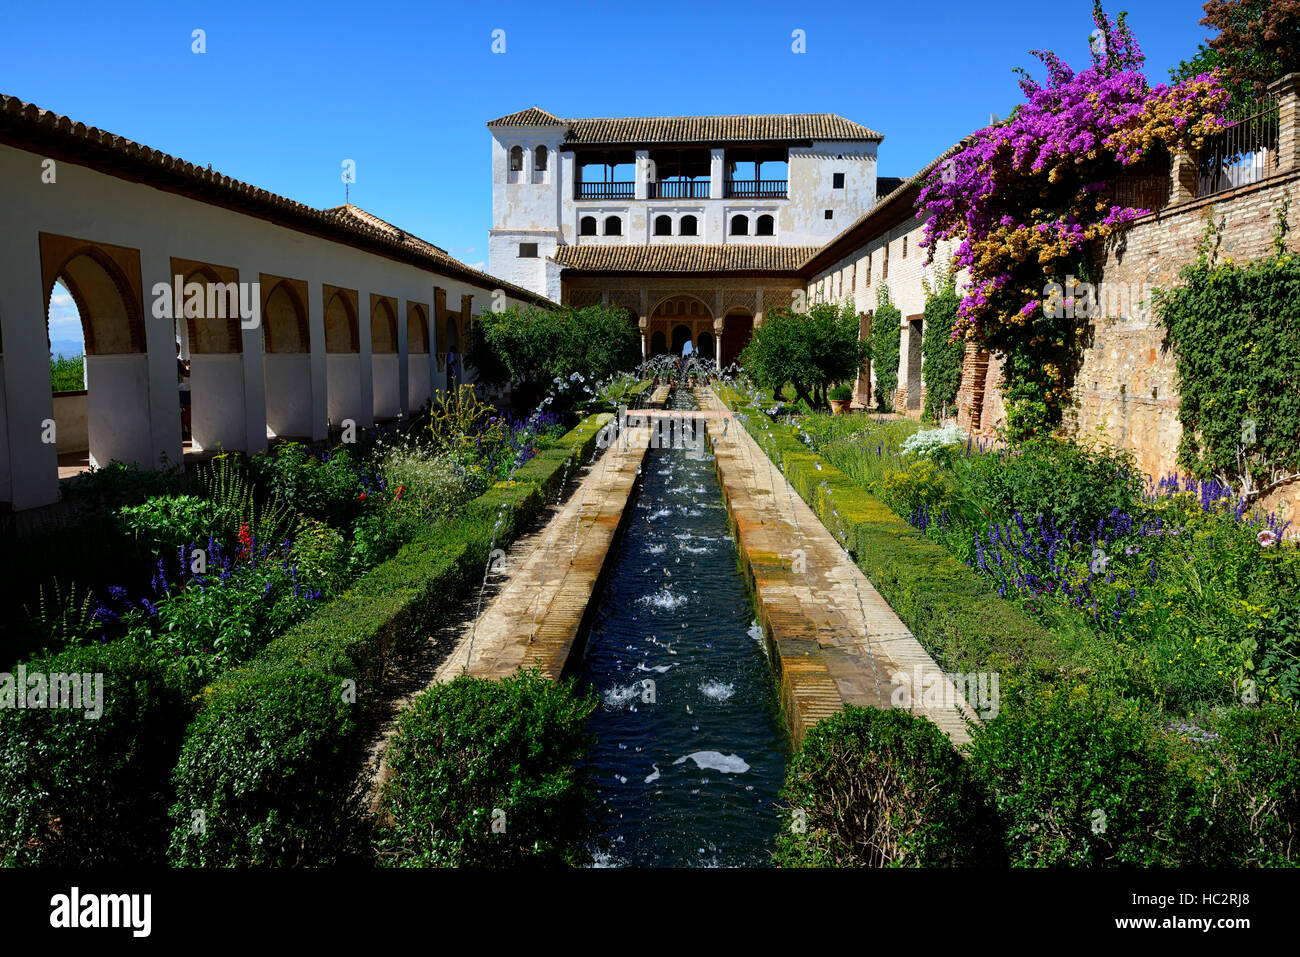 Le Patio de la Acequia canal d'Irrigation de jardin ornemental Palacio de Generalife Alhambra Granada espagne Floral RM Banque D'Images